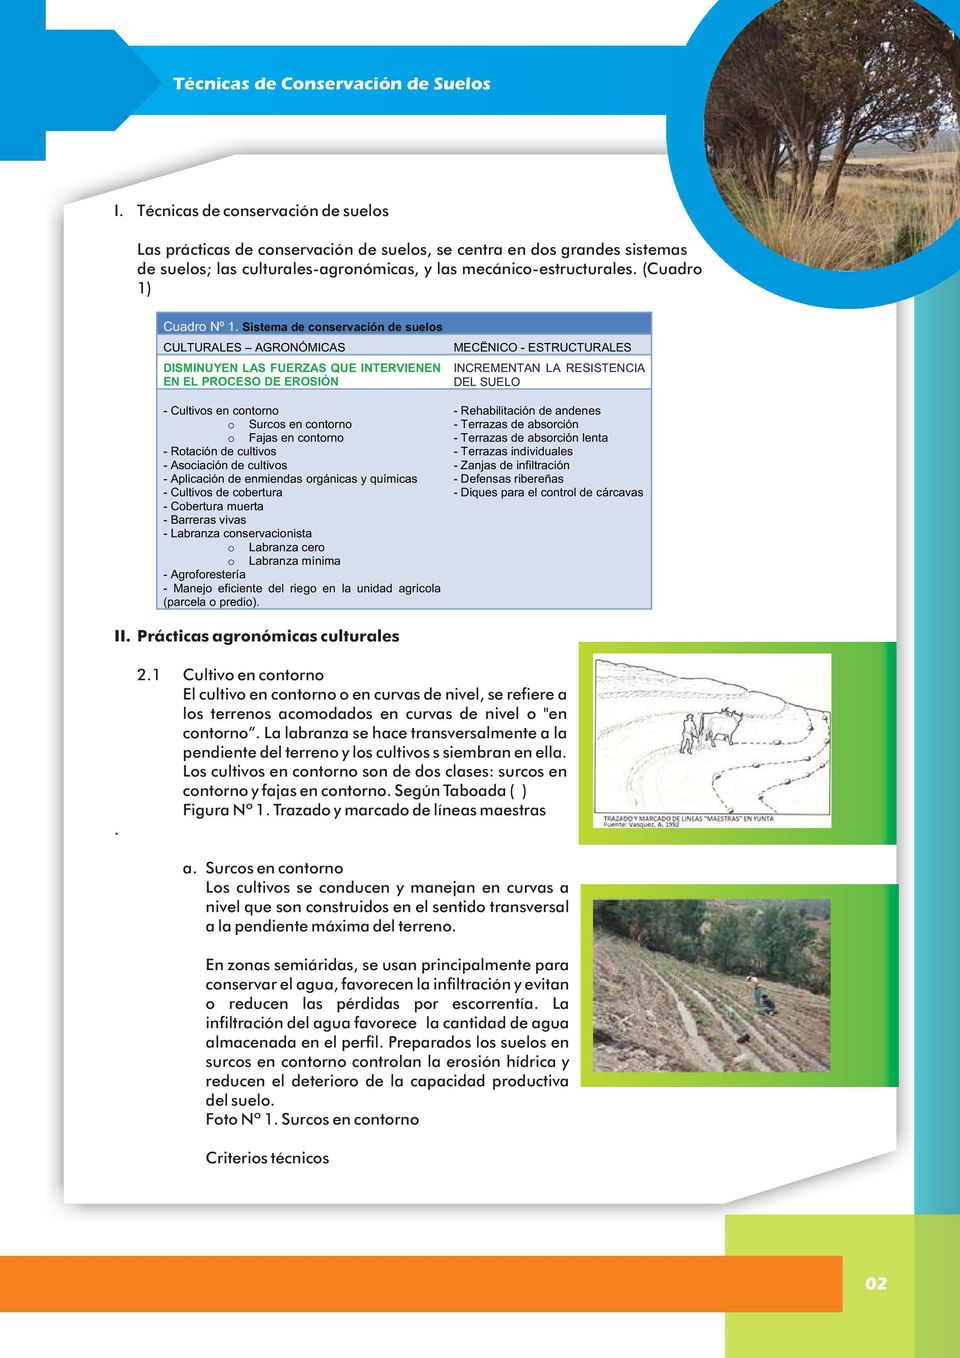 Sistema de conservación de suelos CULTURALES AGRONÓMICAS DISMINUYEN LAS FUERZAS QUE INTERVIENEN EN EL PROCESO DE EROSIÓN MECËNICO - ESTRUCTURALES INCREMENTAN LA RESISTENCIA DEL SUELO - Cultivos en